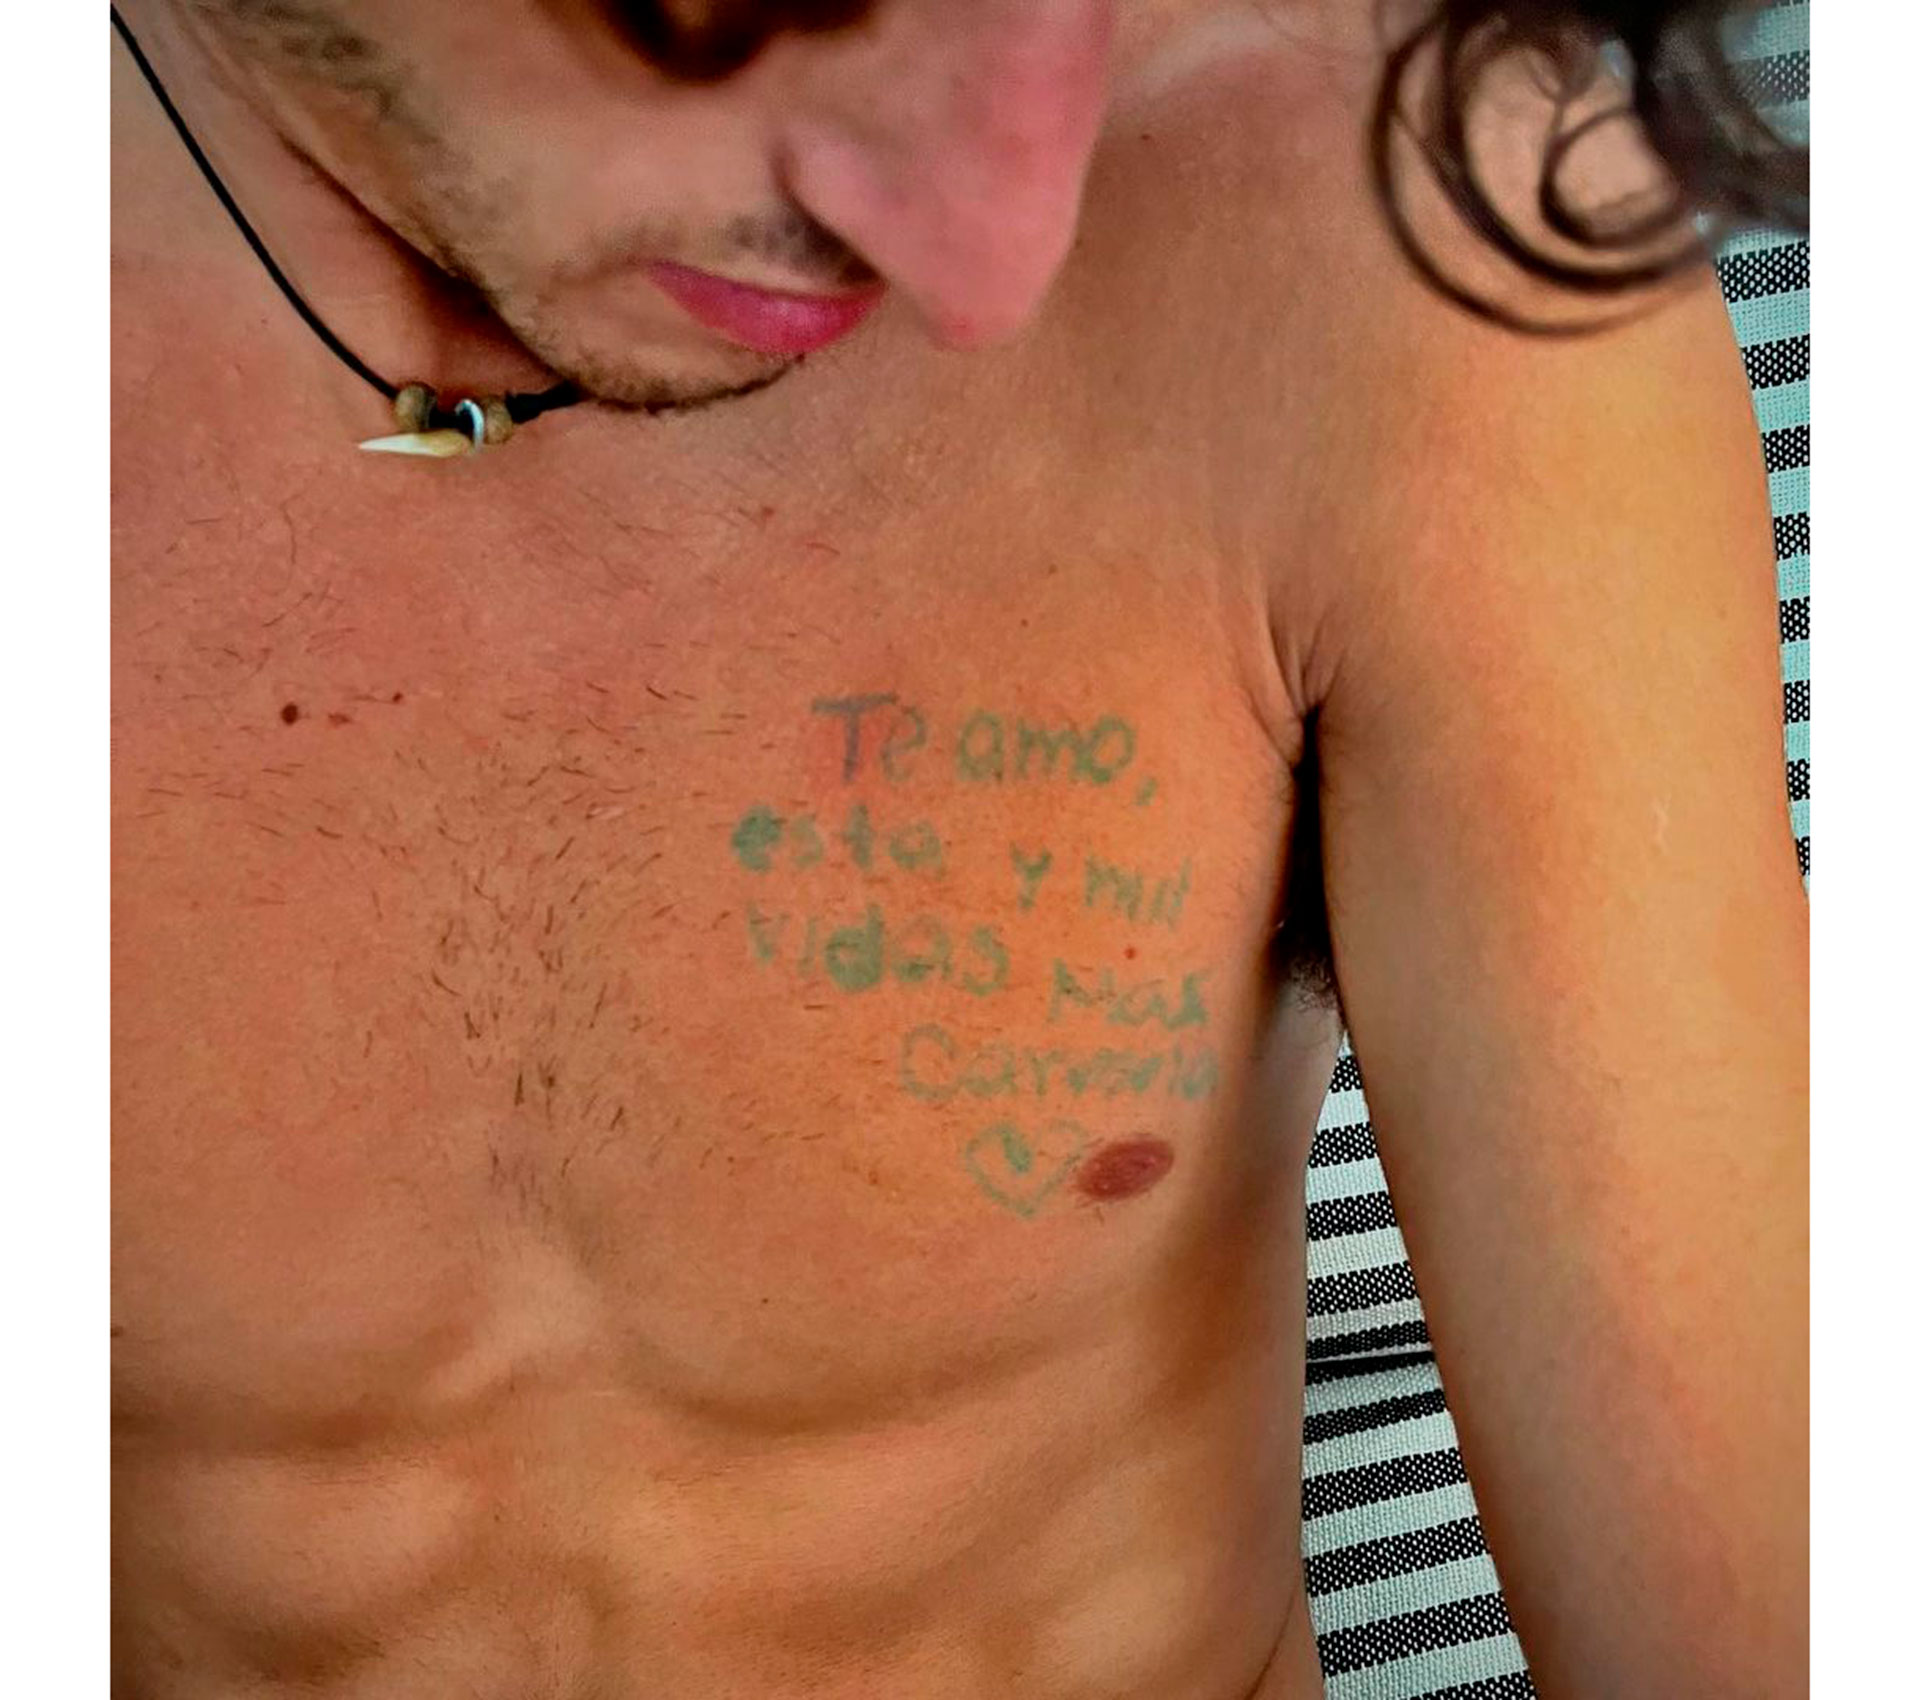 "Te amo esta, y mil vidas más. Carmela", escribió Carmela sobre el torso desnudo de Benjamín, tal como muestra una de las fotos que compartió en su cuenta de Instagram. (@carmelamartinezv)